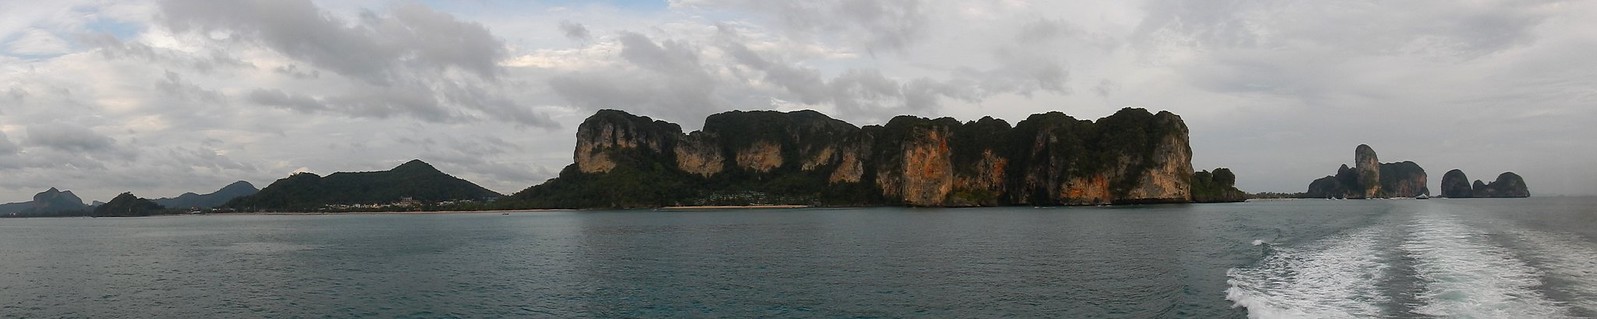 TAILANDIA POR LIBRE: TEMPLOS, ISLAS Y PLAYAS - Blogs de Tailandia - Rumbo a Ao Nang: navegando entre gigantes de roca (24)